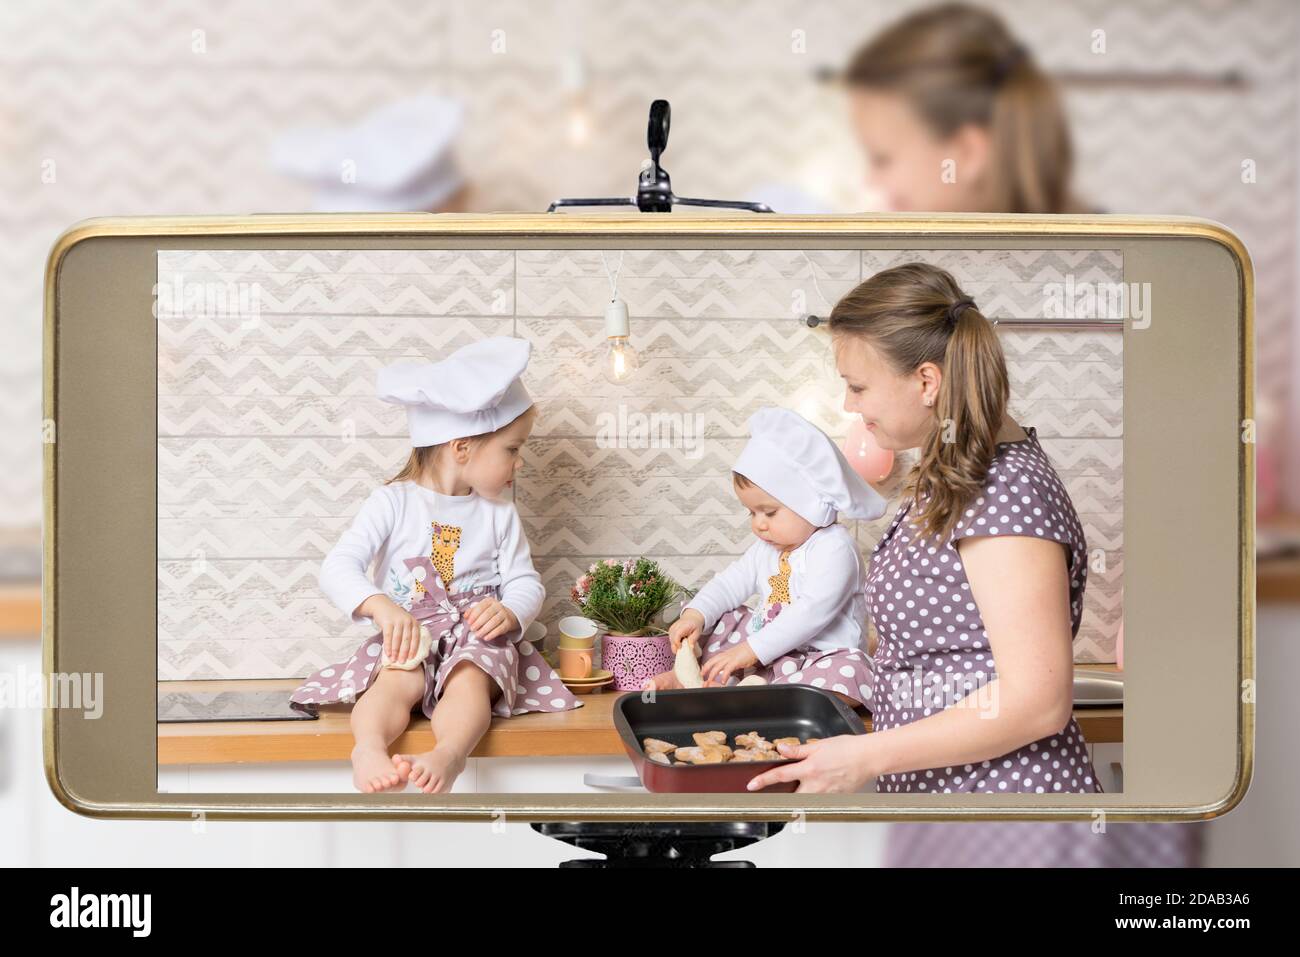 Jeune femme blogueuse et vlogger en ligne influenceur maman avec deux filles, en streaming en direct une cuisine, des cookies de cuisson avec les enfants montrent sur les médias sociaux Banque D'Images